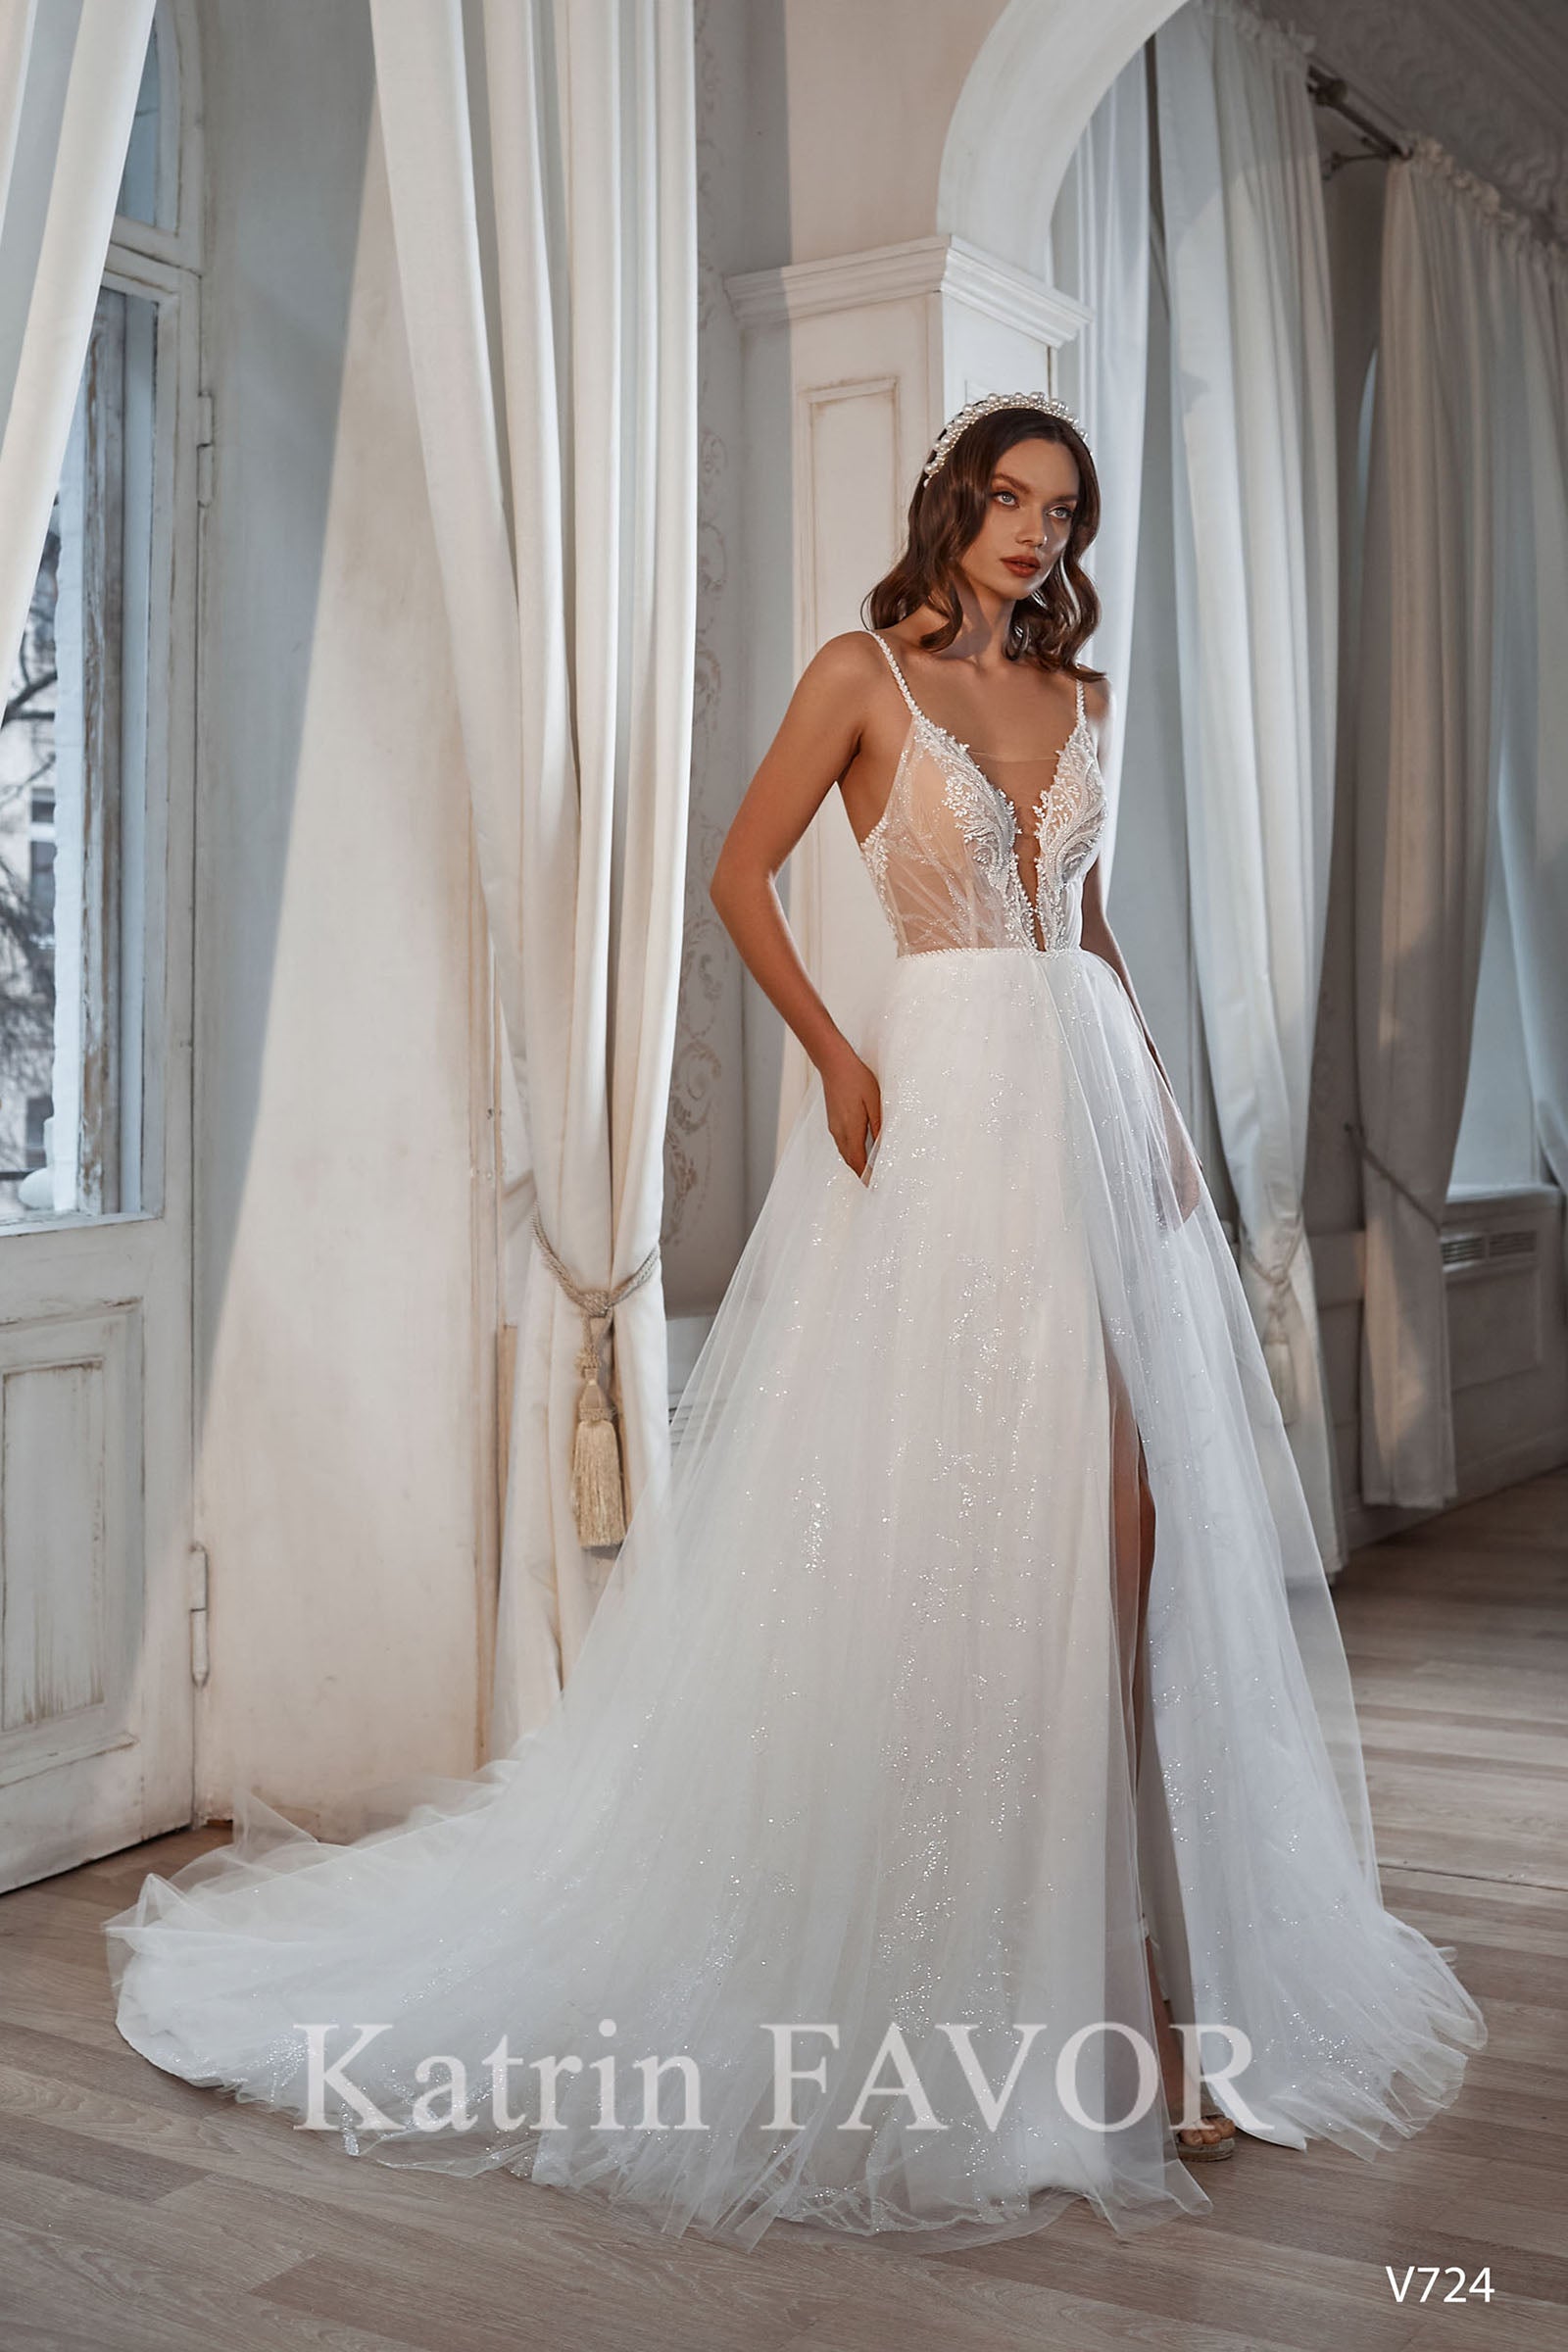 KatrinFAVORboutique-Sparkle tulle beach wedding dress